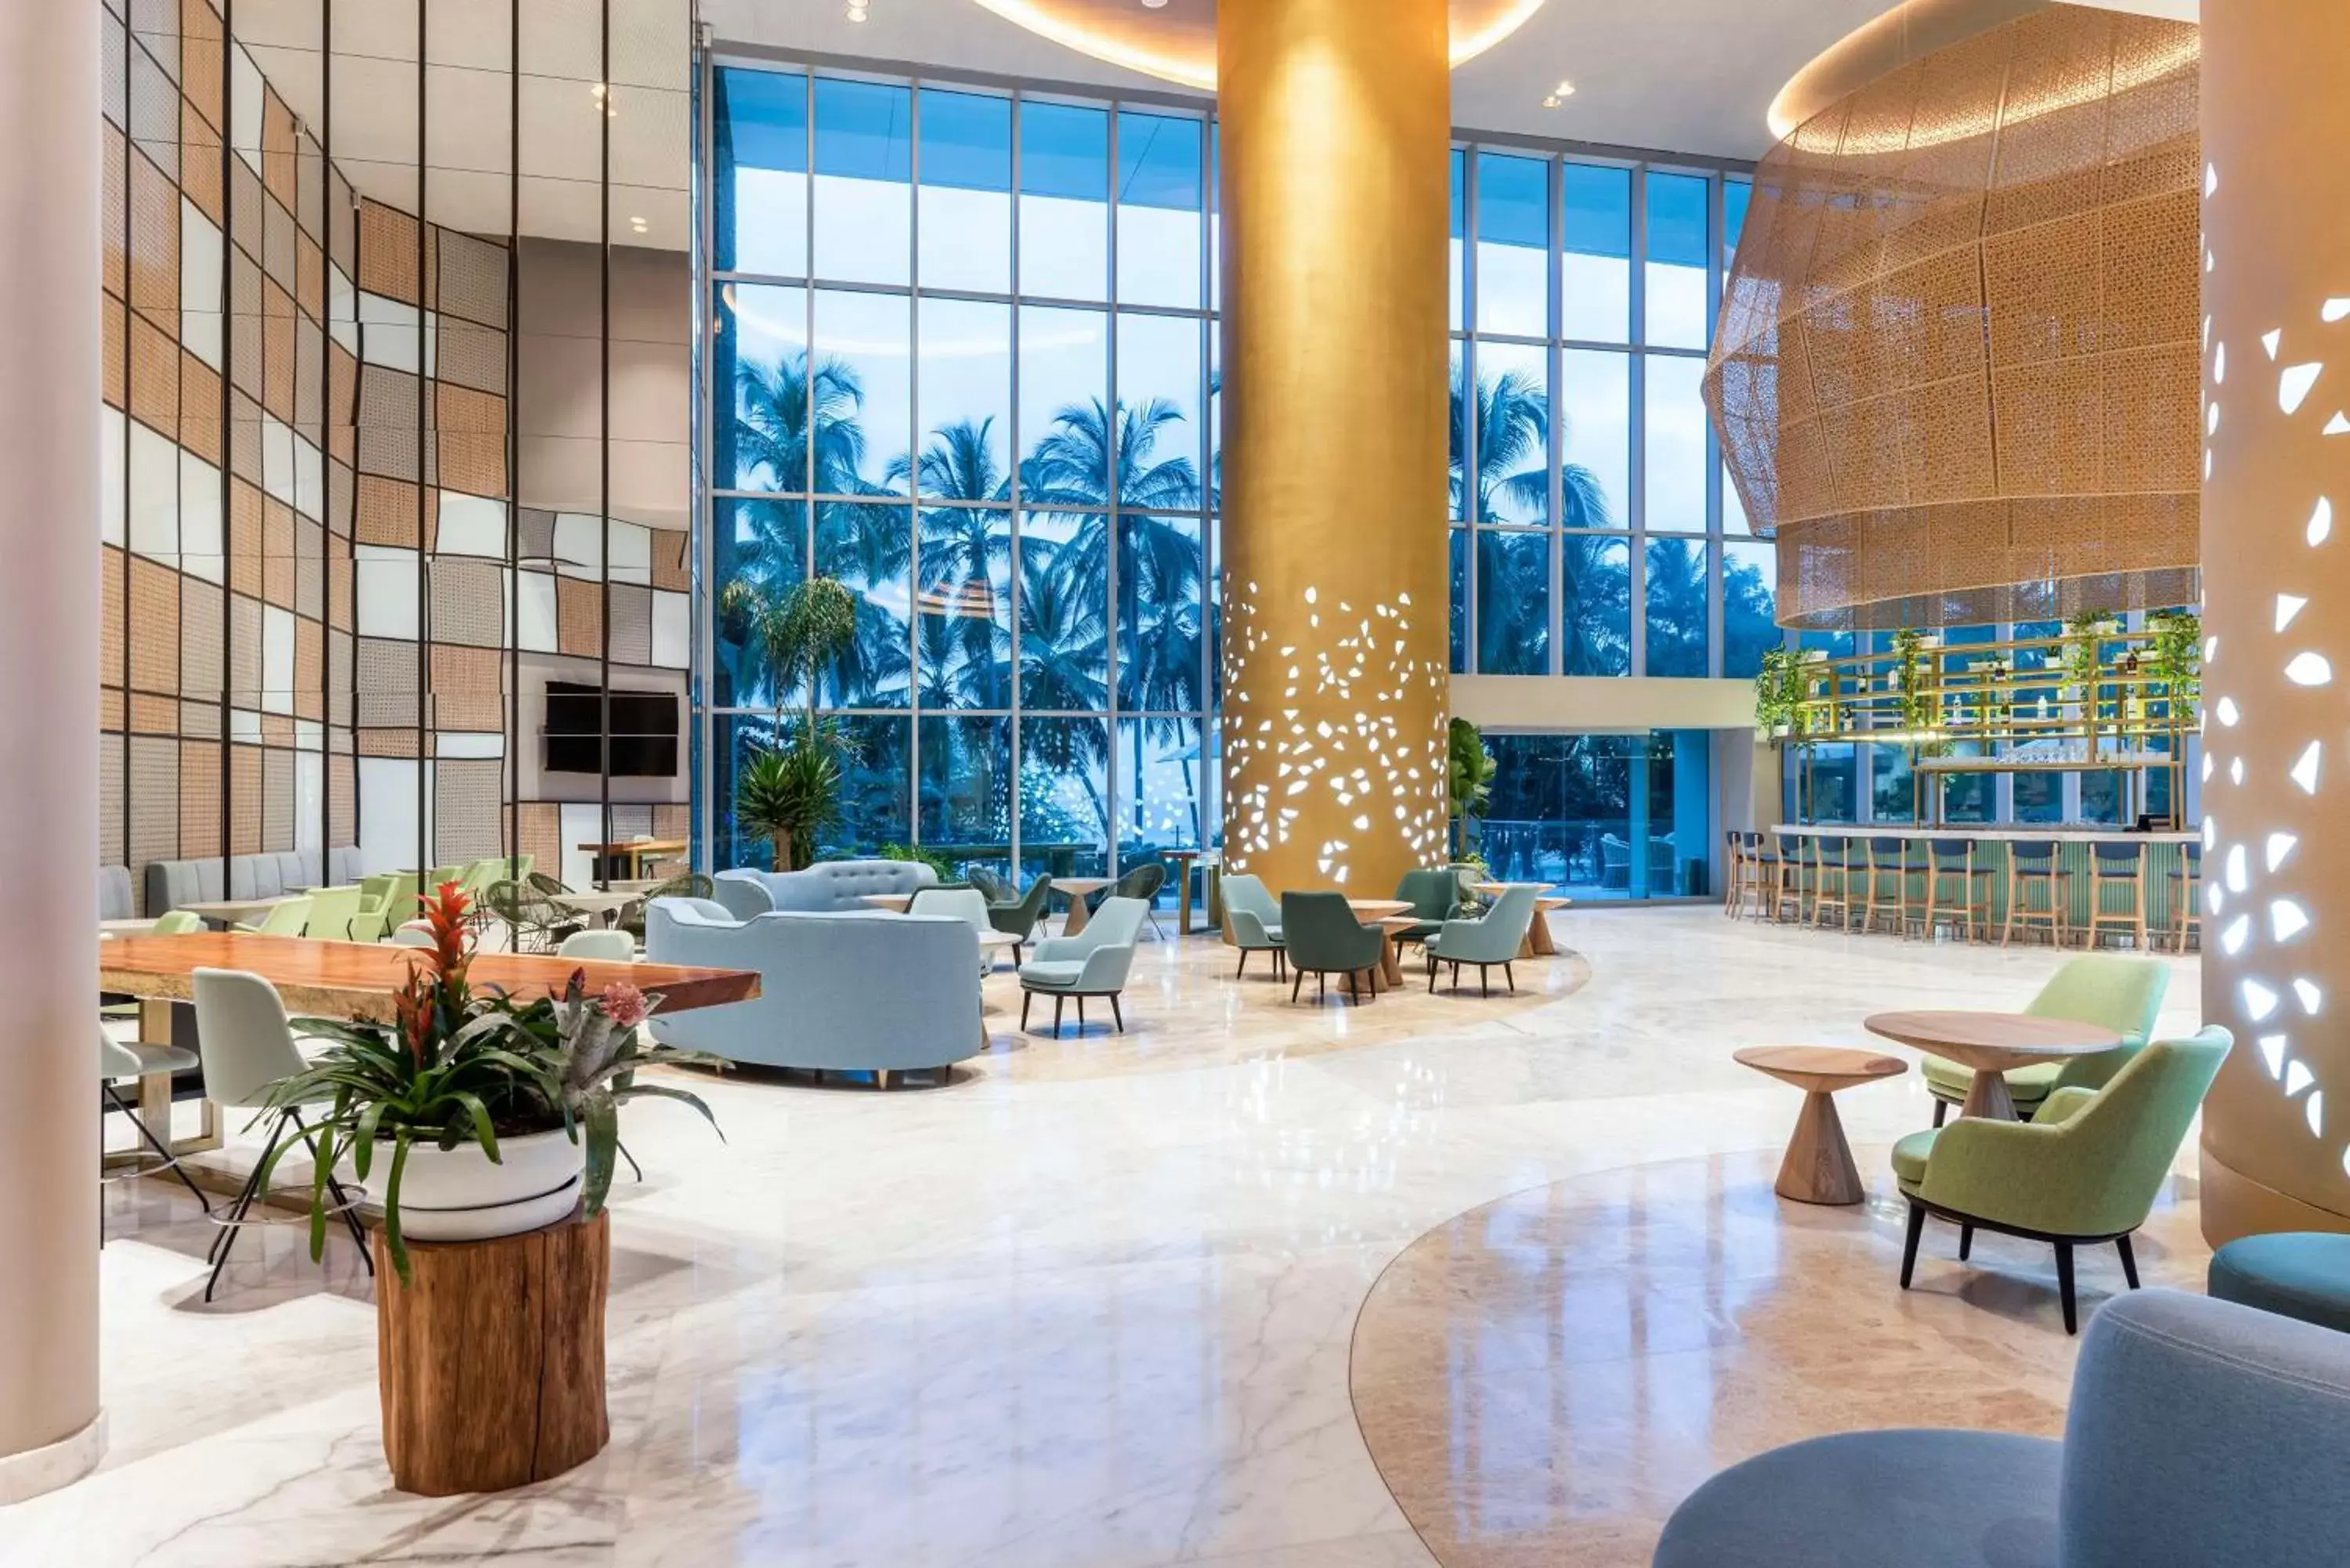 Lobby or reception, Lobby/Reception in Hilton Santa Marta